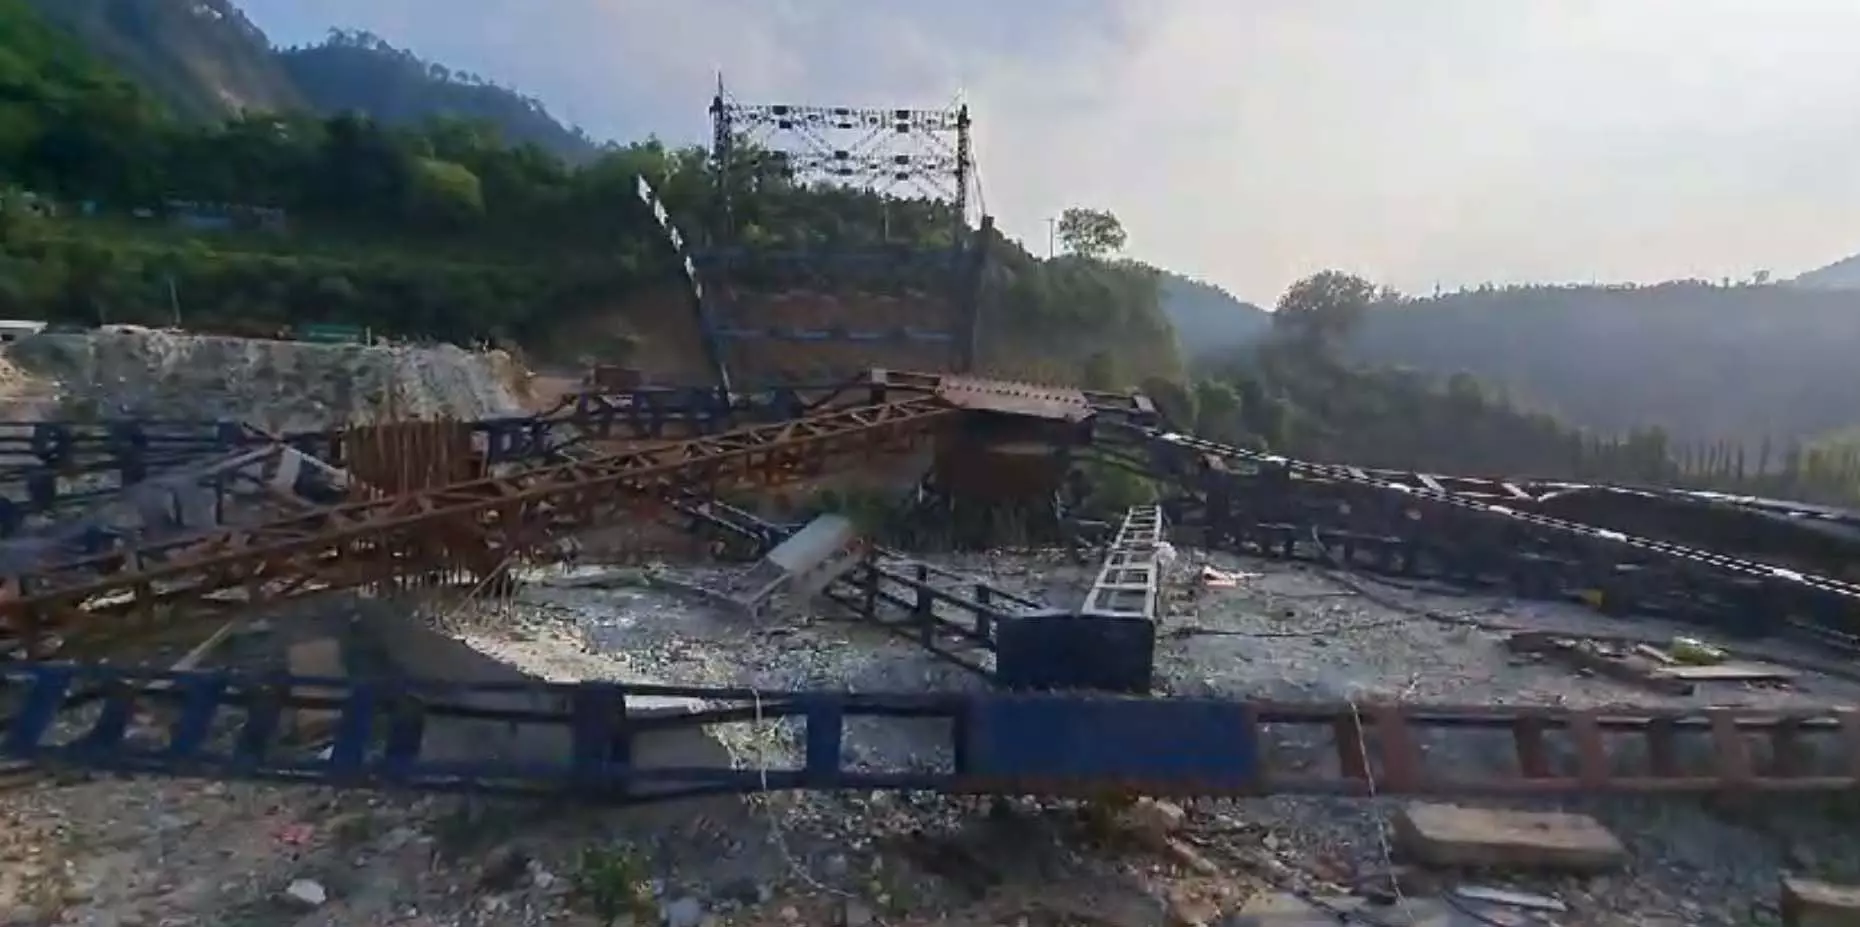 BIG BREAKING: 110 मीटर लंबा ब्रिज भरभराकर गिरा, देखें VIDEO...